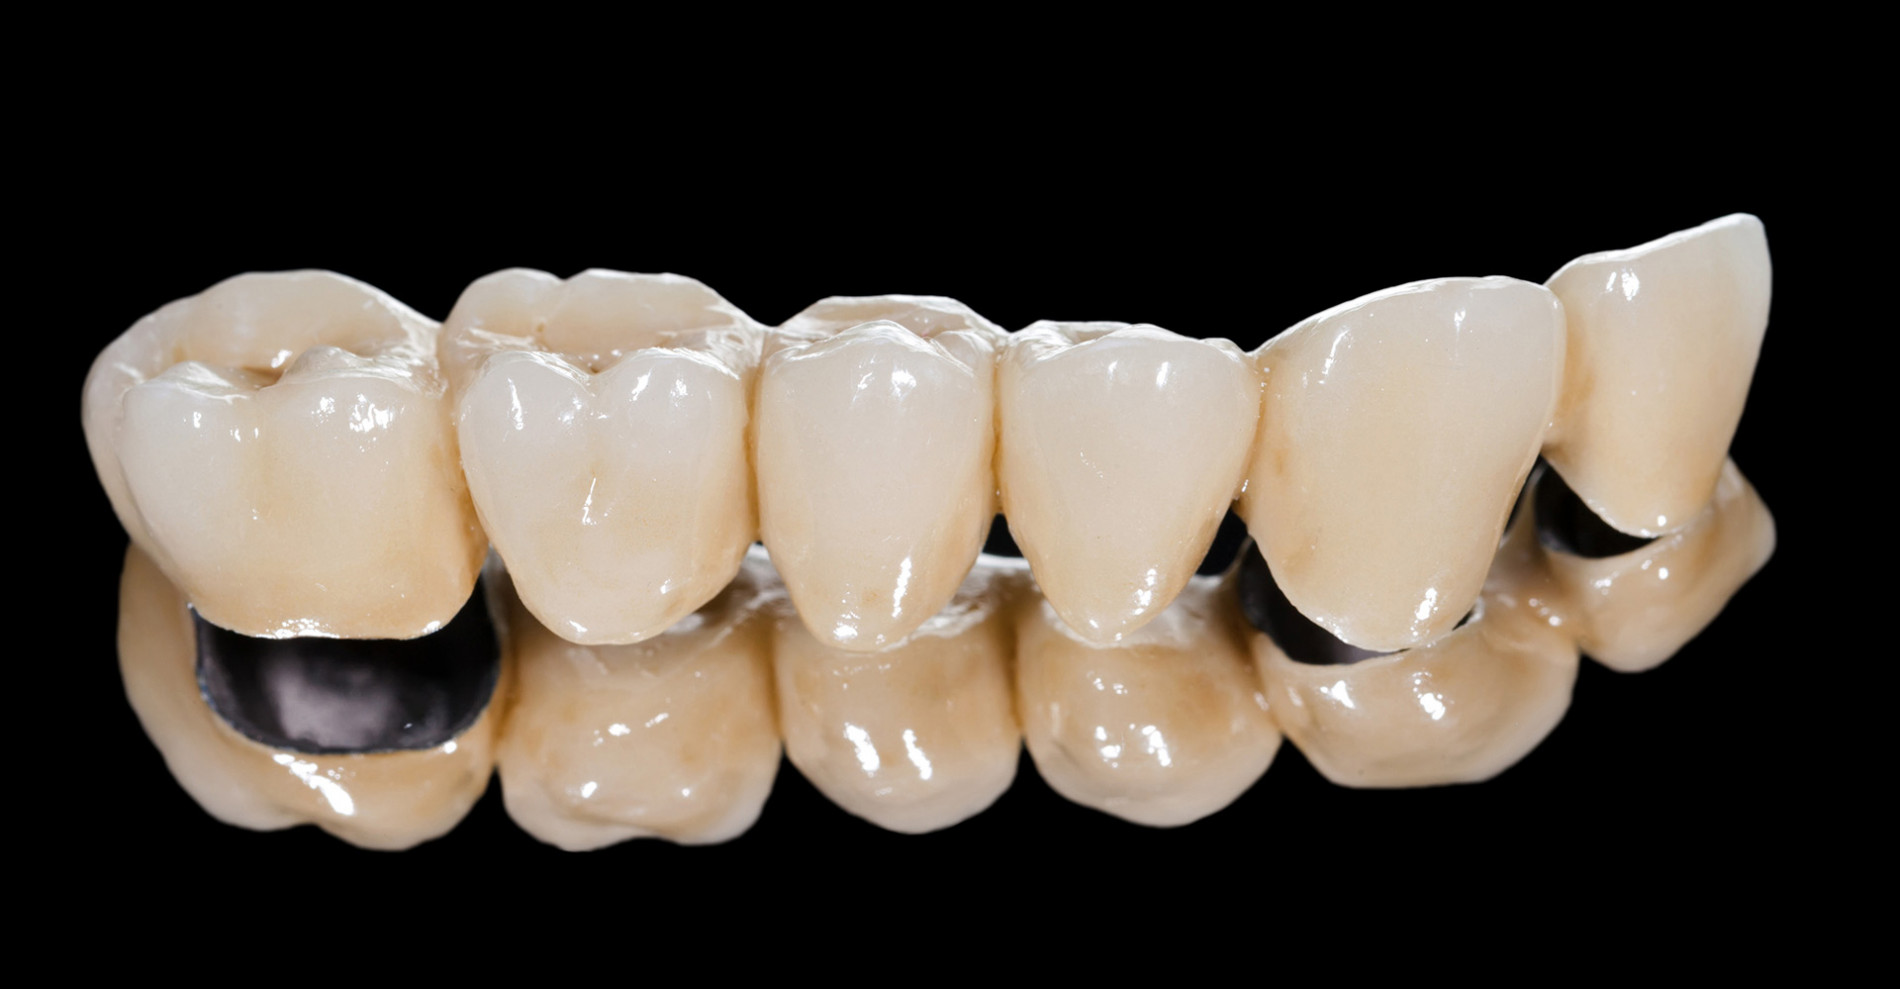 Металлокерамические коронки на зубы